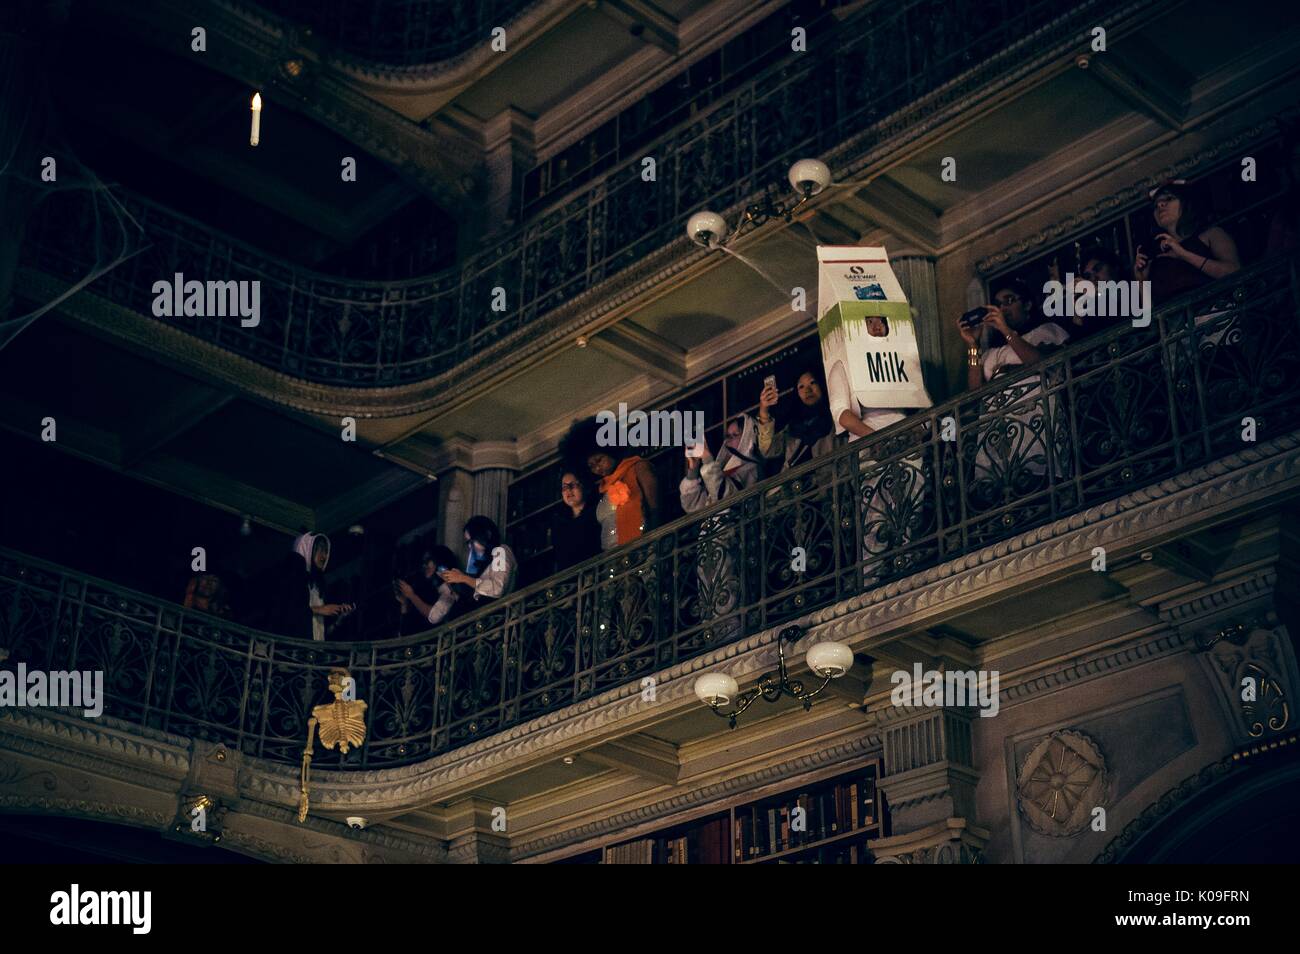 Vue d'un des étages supérieurs de la bibliothèque Peabody, les étudiants sont à la recherche vers le bas ci-dessous et un étudiant est habillé comme un grand carton de lait, 2015. Avec la permission de Eric Chen. Banque D'Images